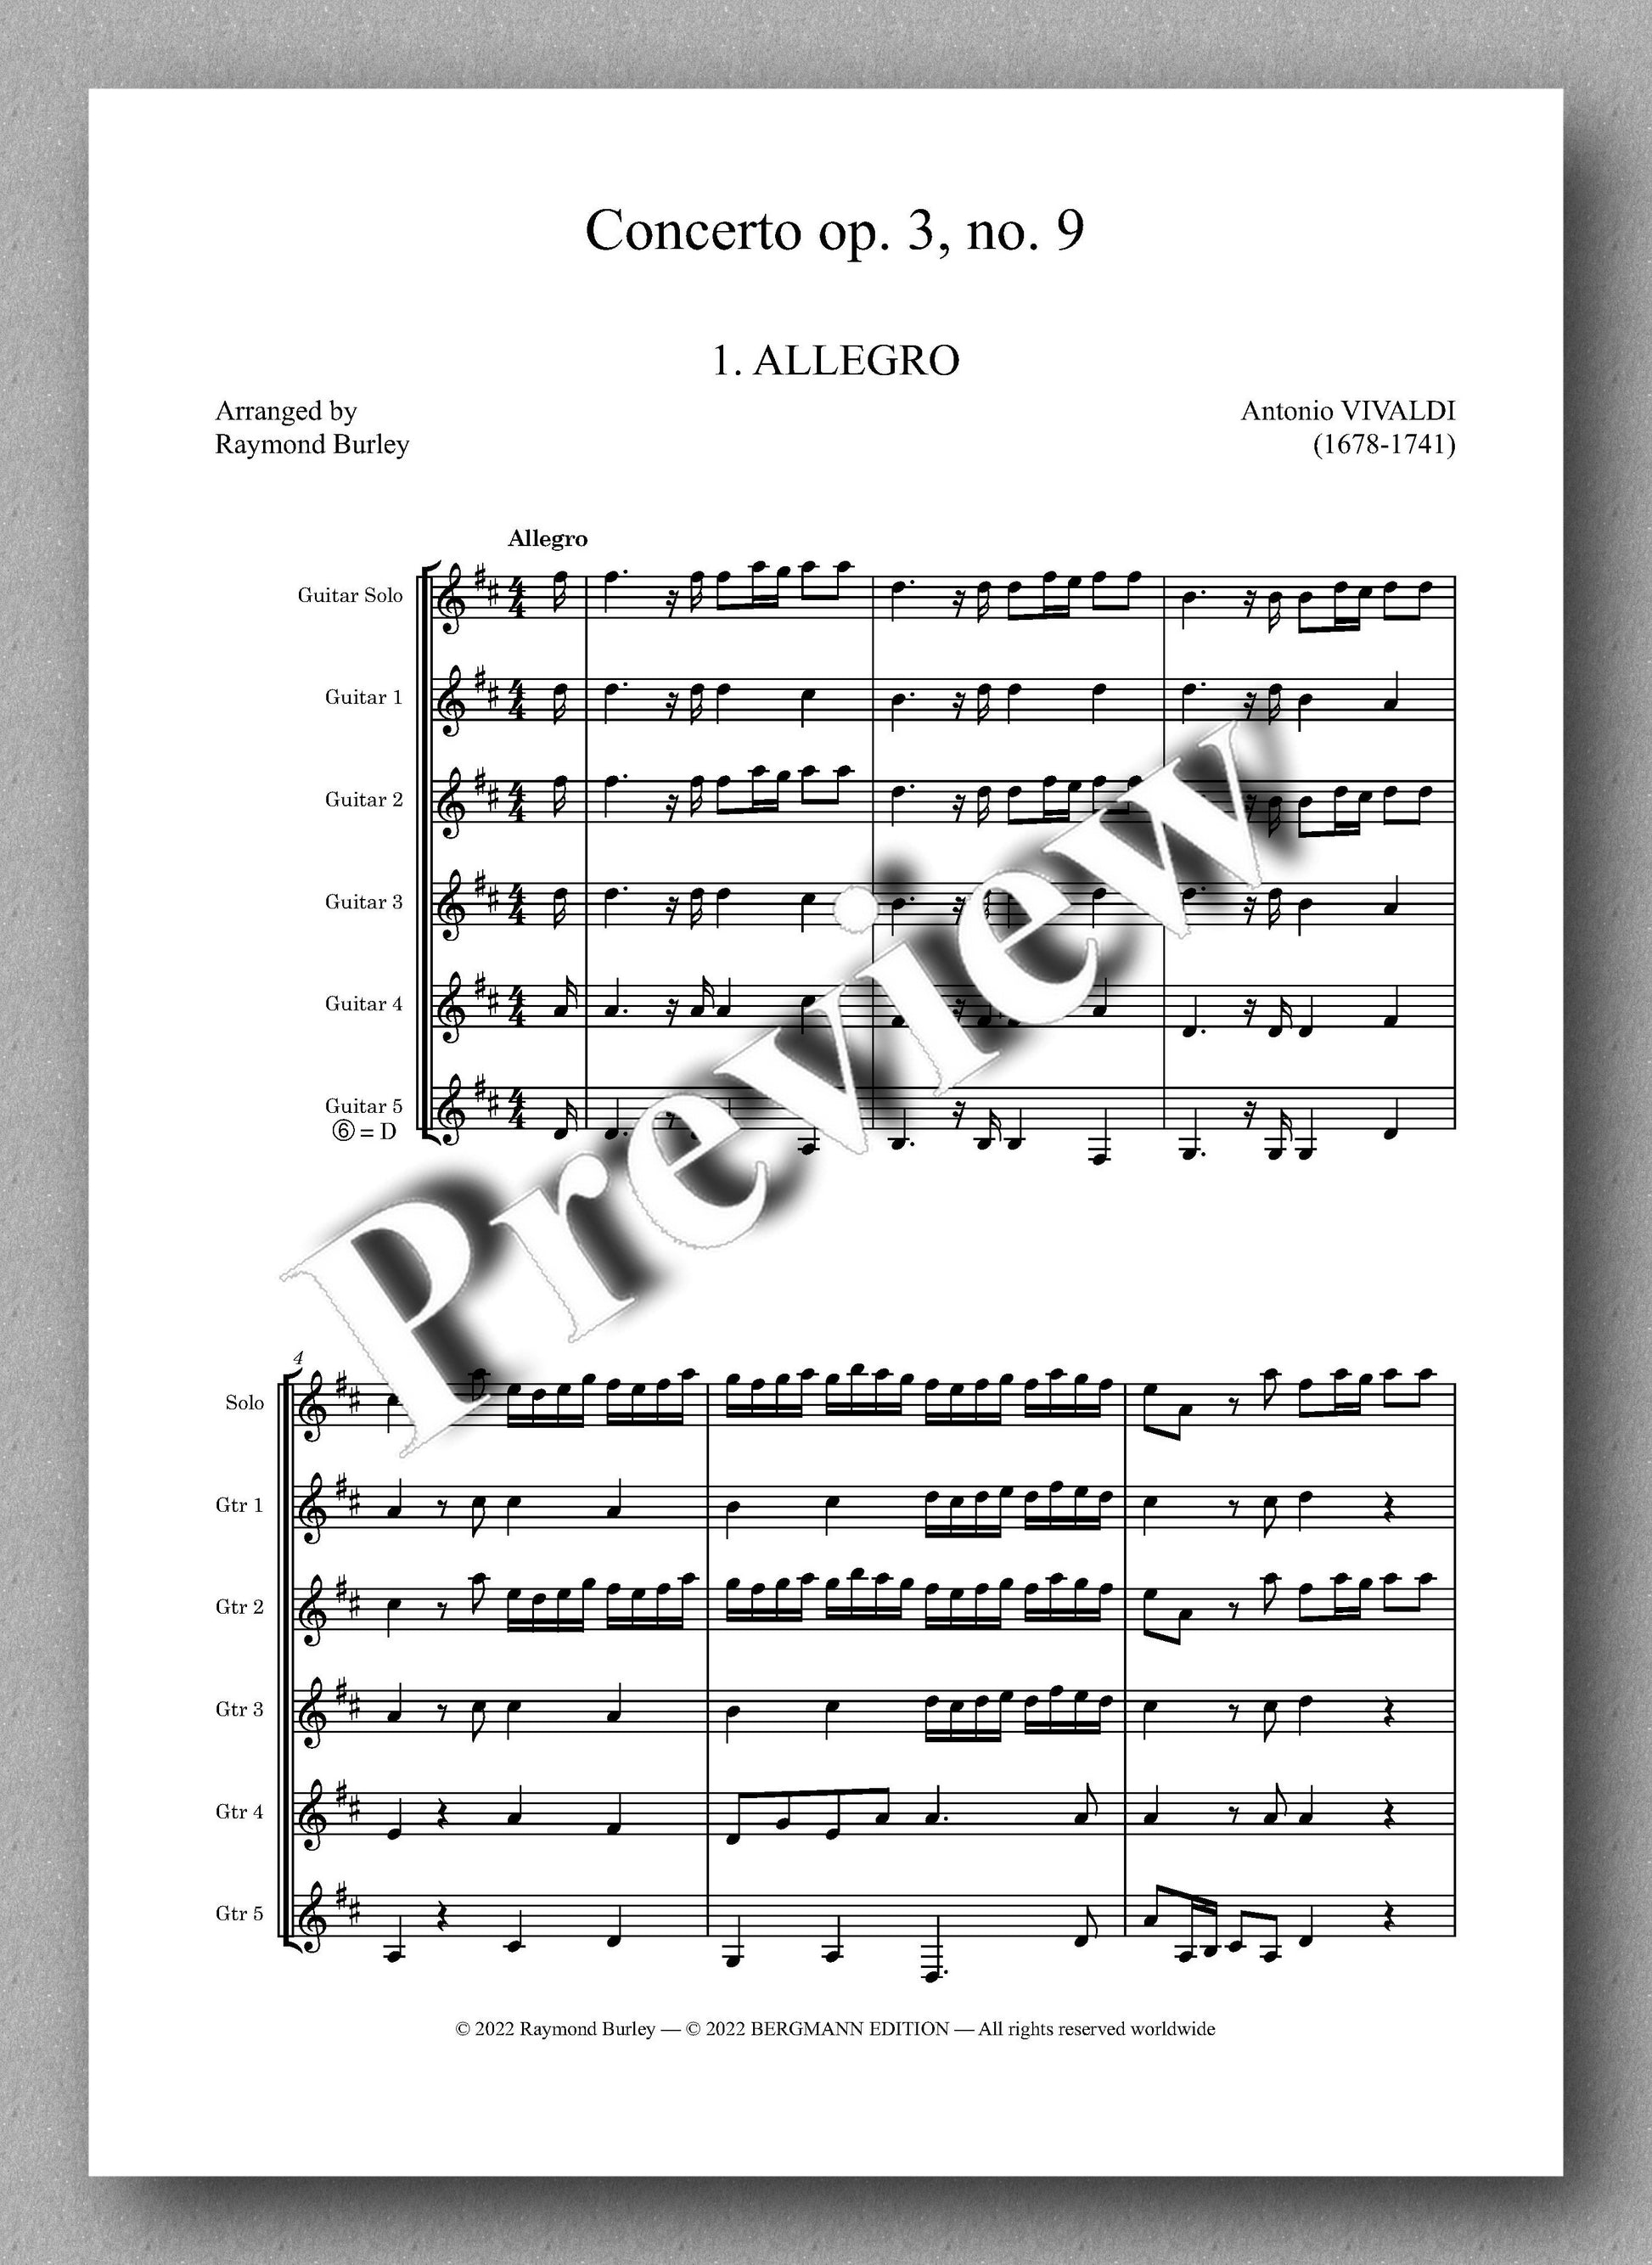 Vivaldi-Burley, Concerto op. 3, no. 9 - music score 1